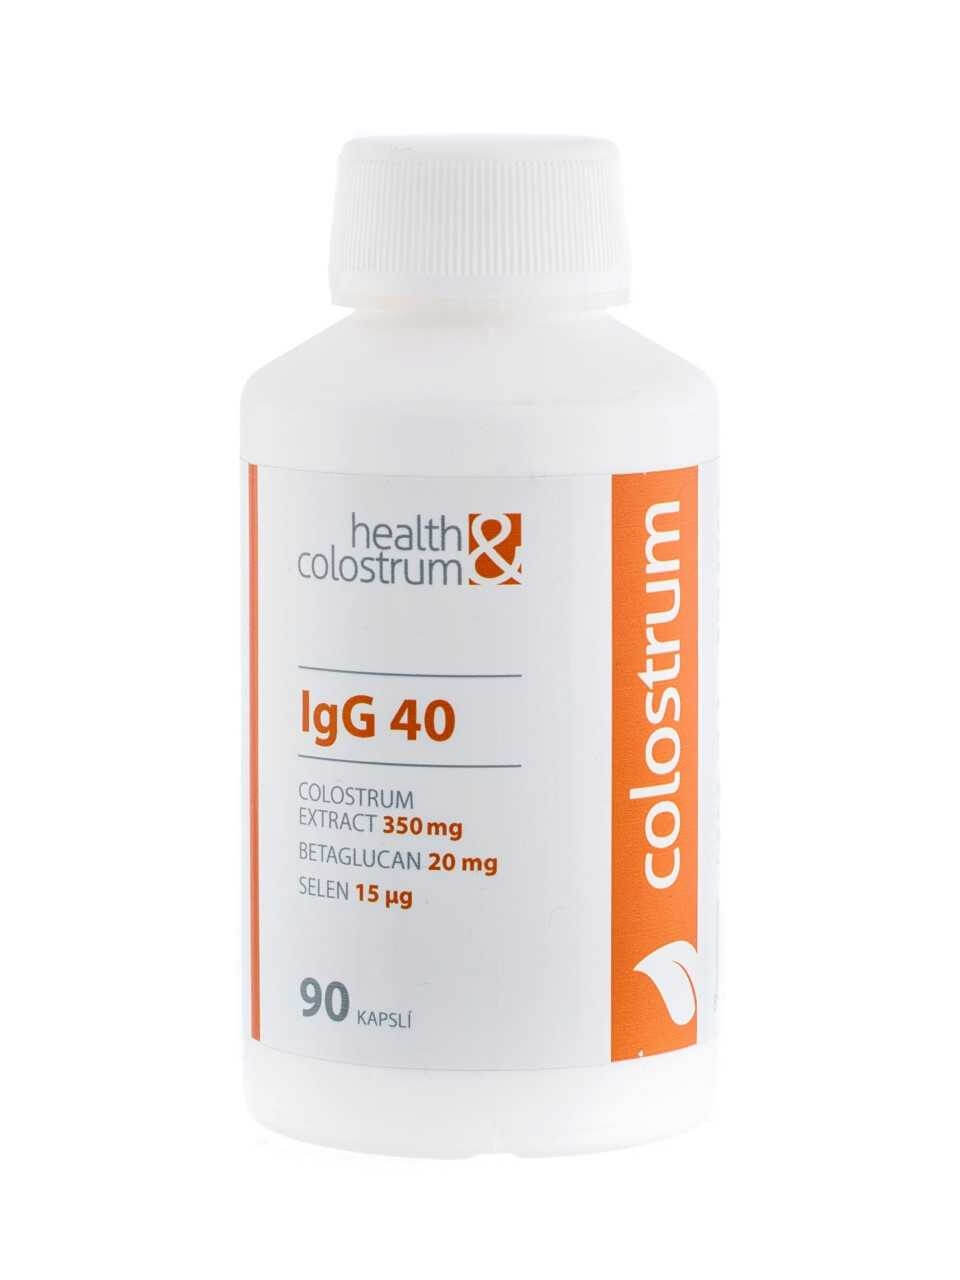 Zobrazit detail výrobku Health&colostrum Colostrum IgG 40 (350 mg) + betaglukan + selen 90 kapslí + 2 měsíce na vrácení zboží